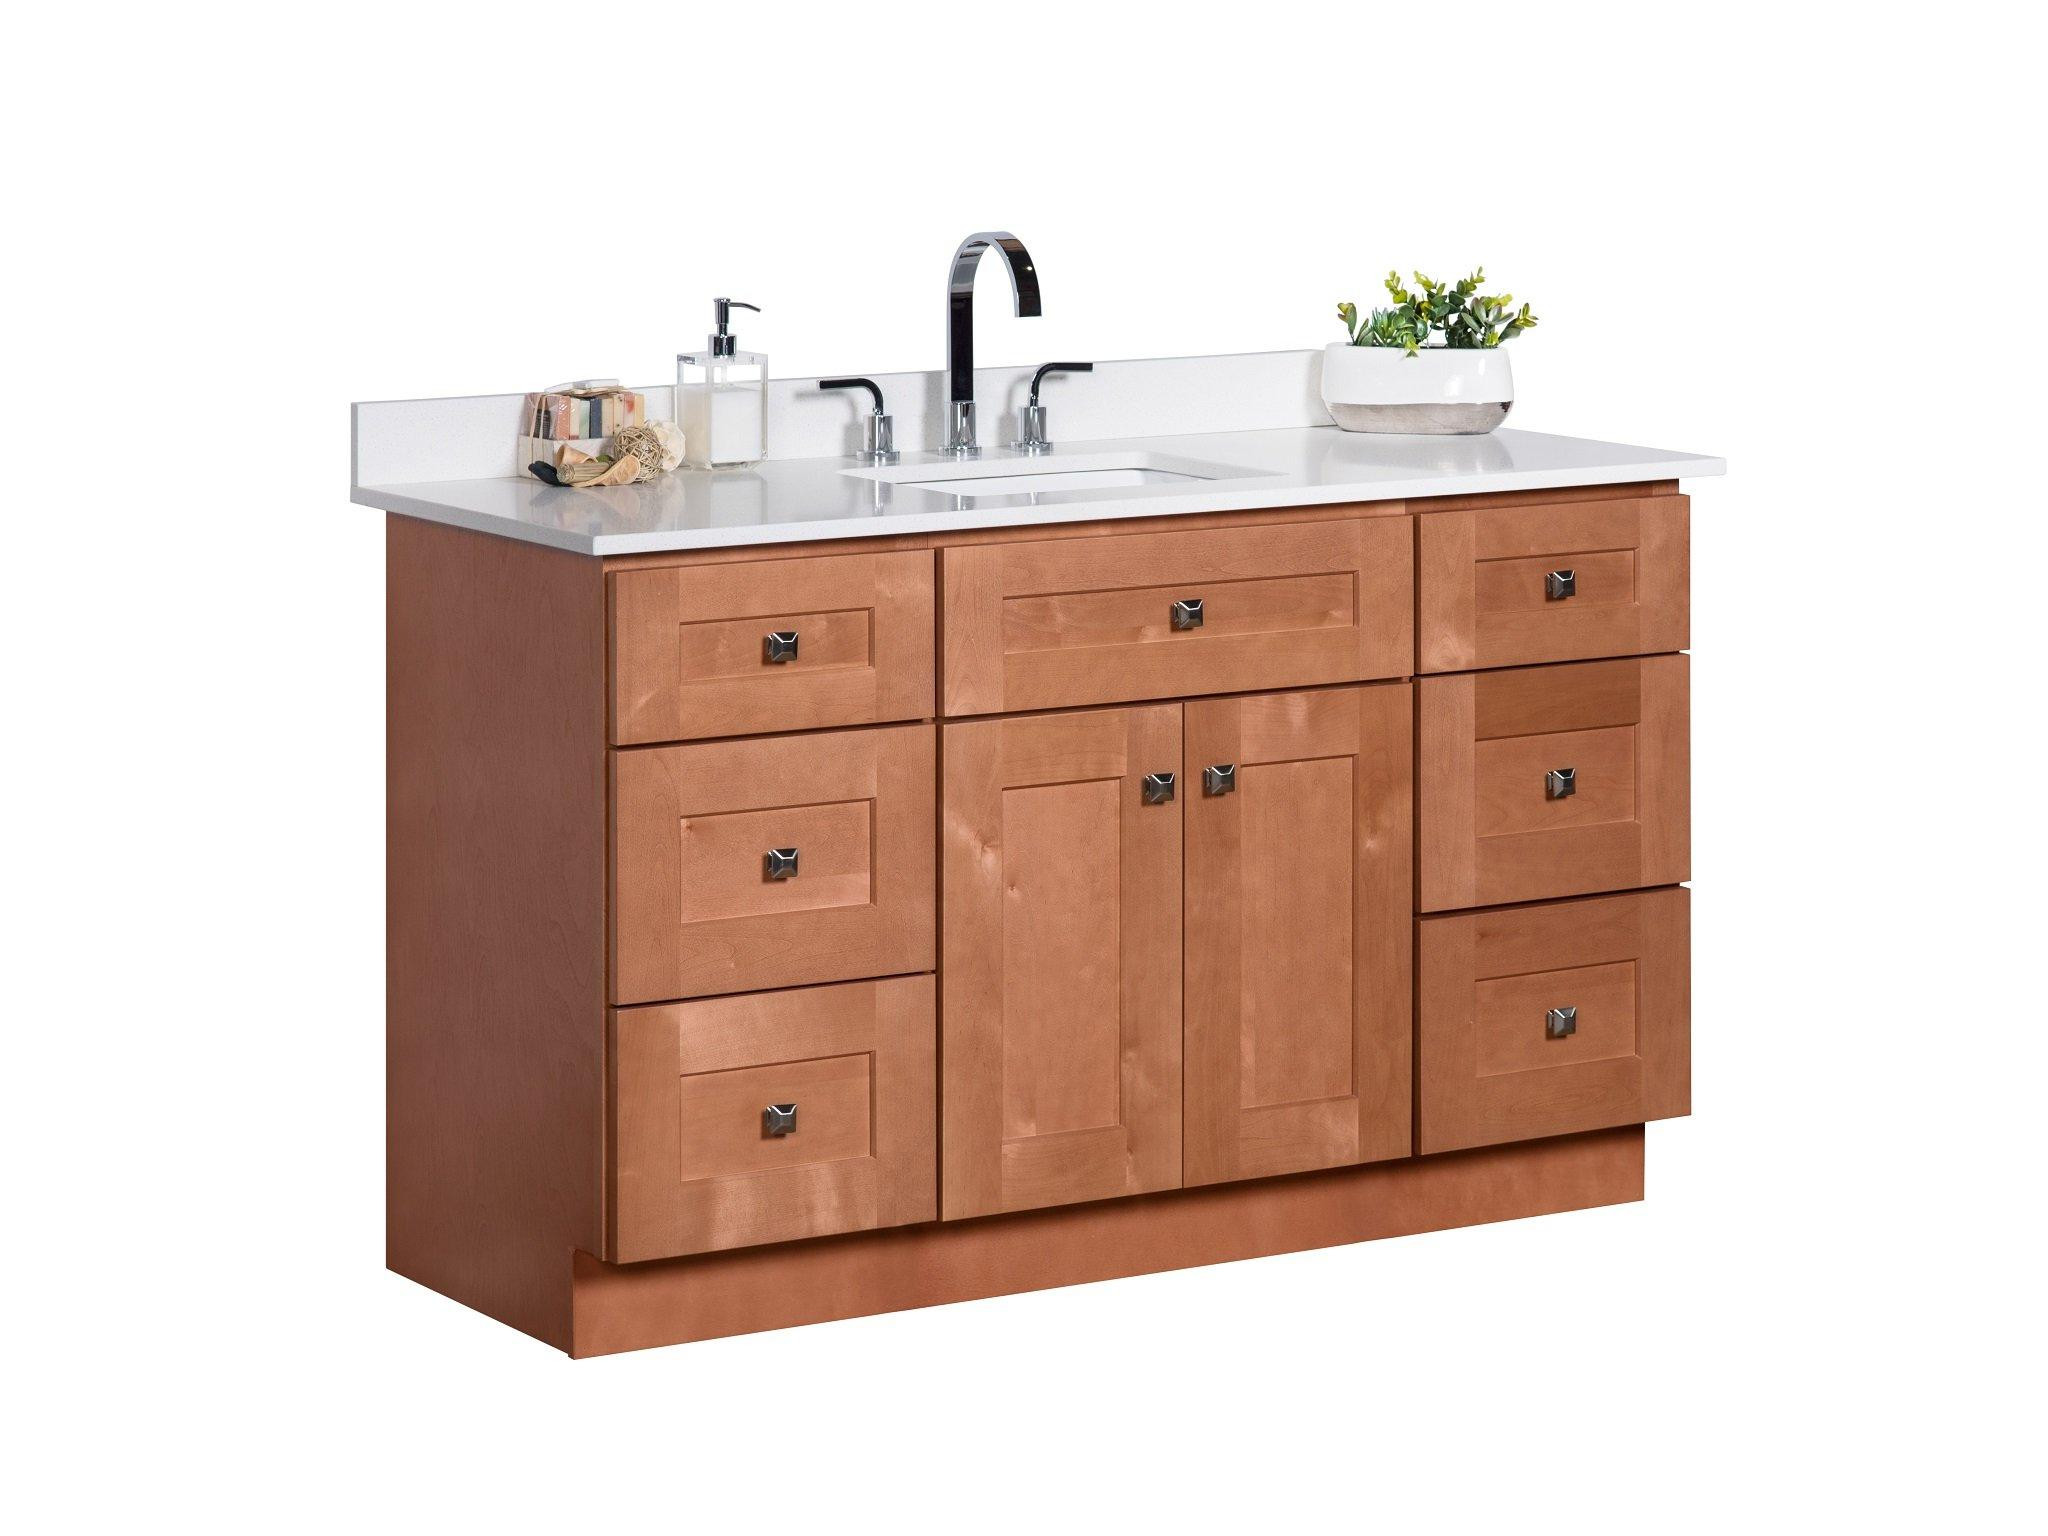 Maple Bathroom Vanity
 54 ̎ Single Sink Maple Wood Bathroom Vanity in Almond